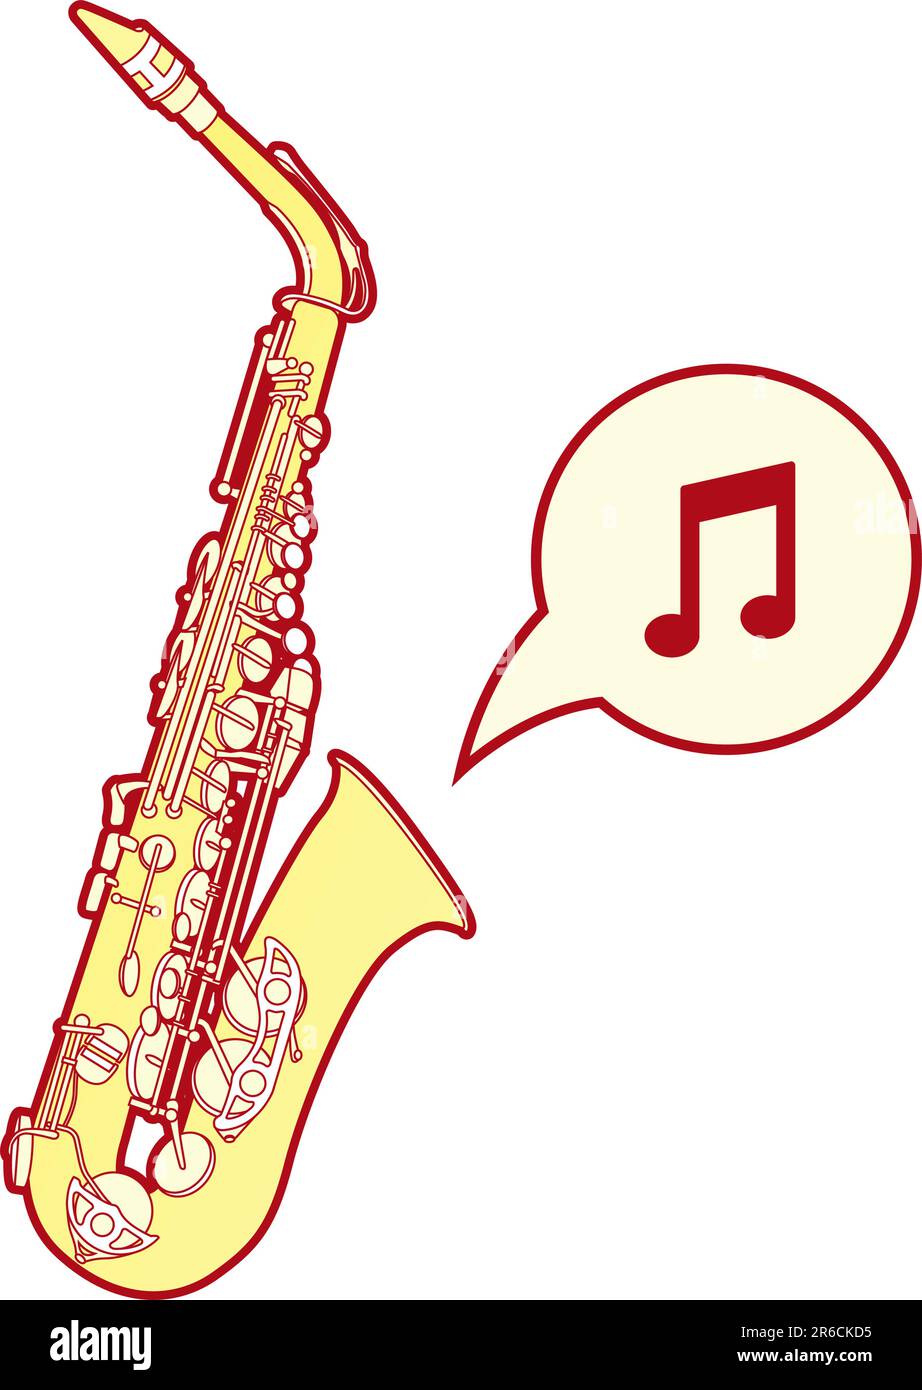 Illustration vectorielle détaillée et stylisée d'un saxophone, instrument de musique en laiton commun aux groupes et orchestres de jazz. Illustration de Vecteur